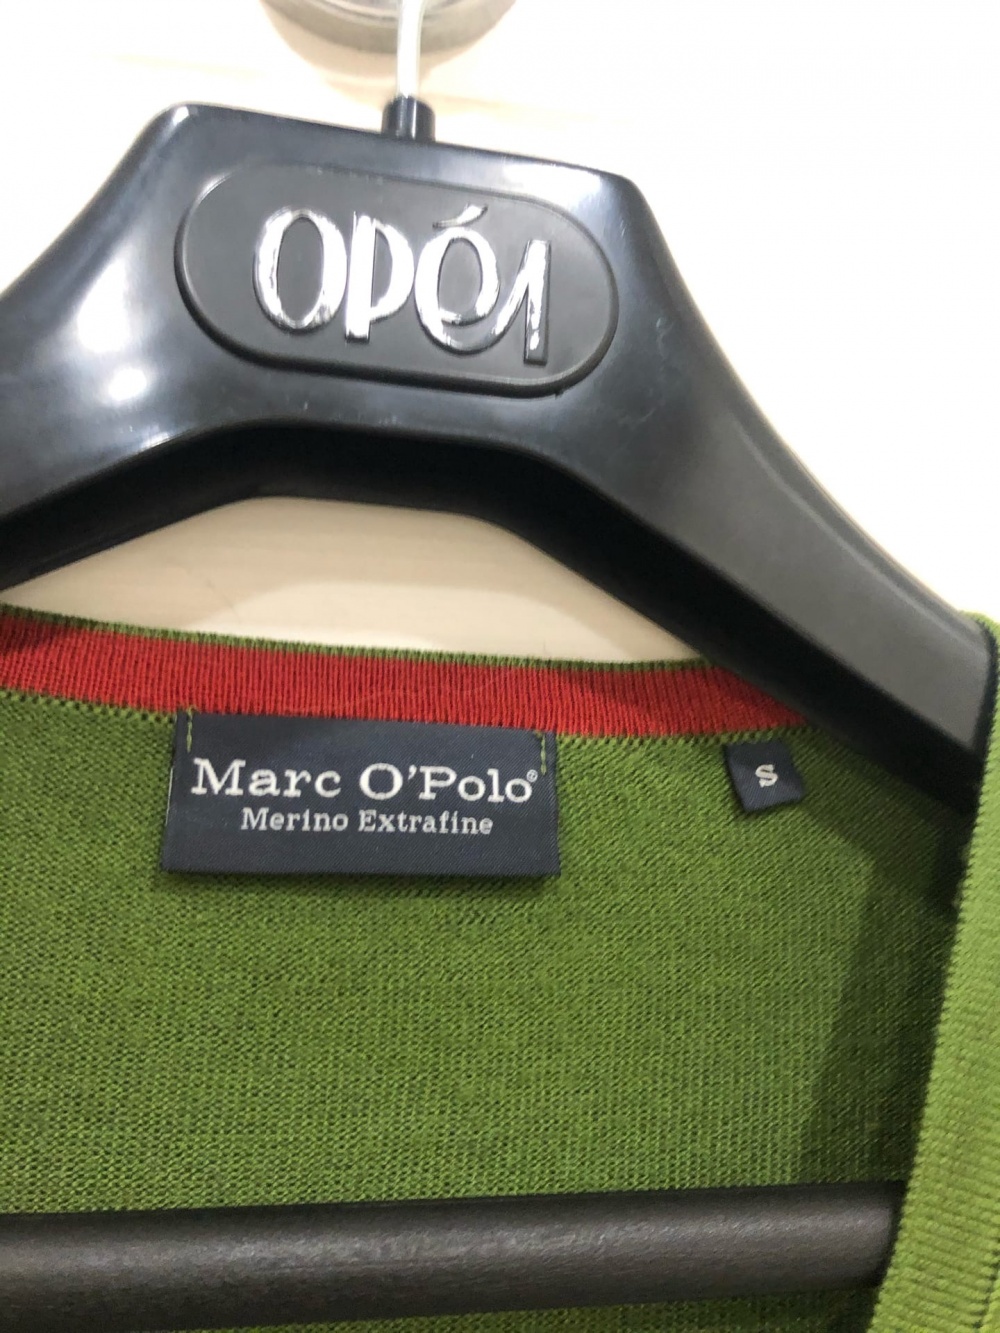 Пуловер Marc O'Polo.Размер S.